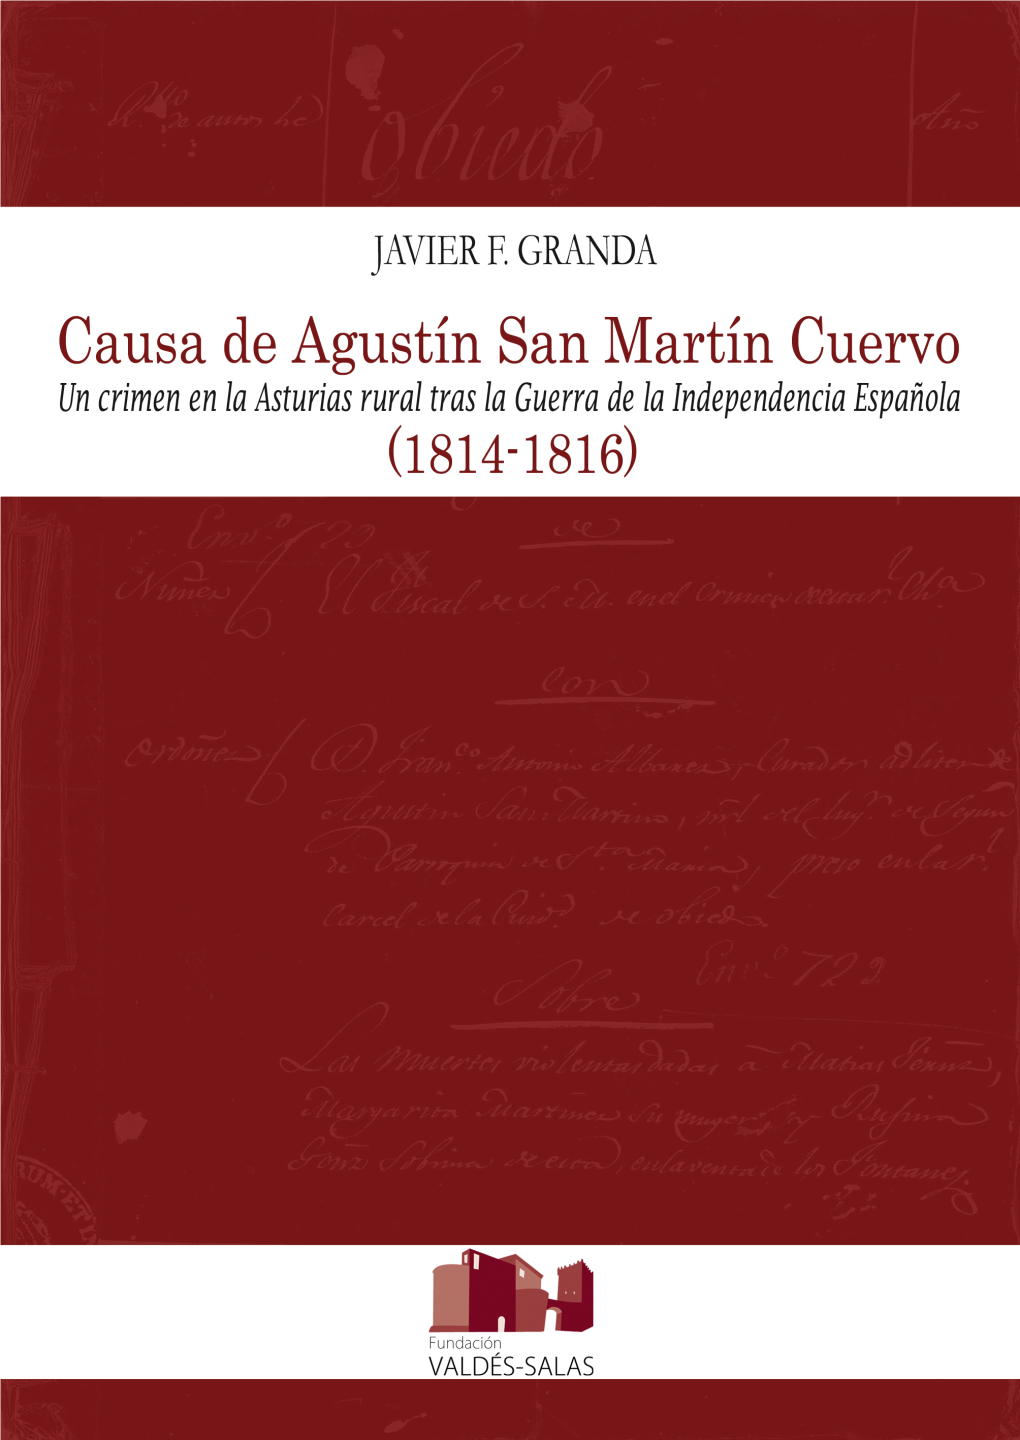 Causa De Agustín San Martín Cuervo (1814-1816) Un Crimen En La Asturias Rural Tras La Guerra De La Independencia Española